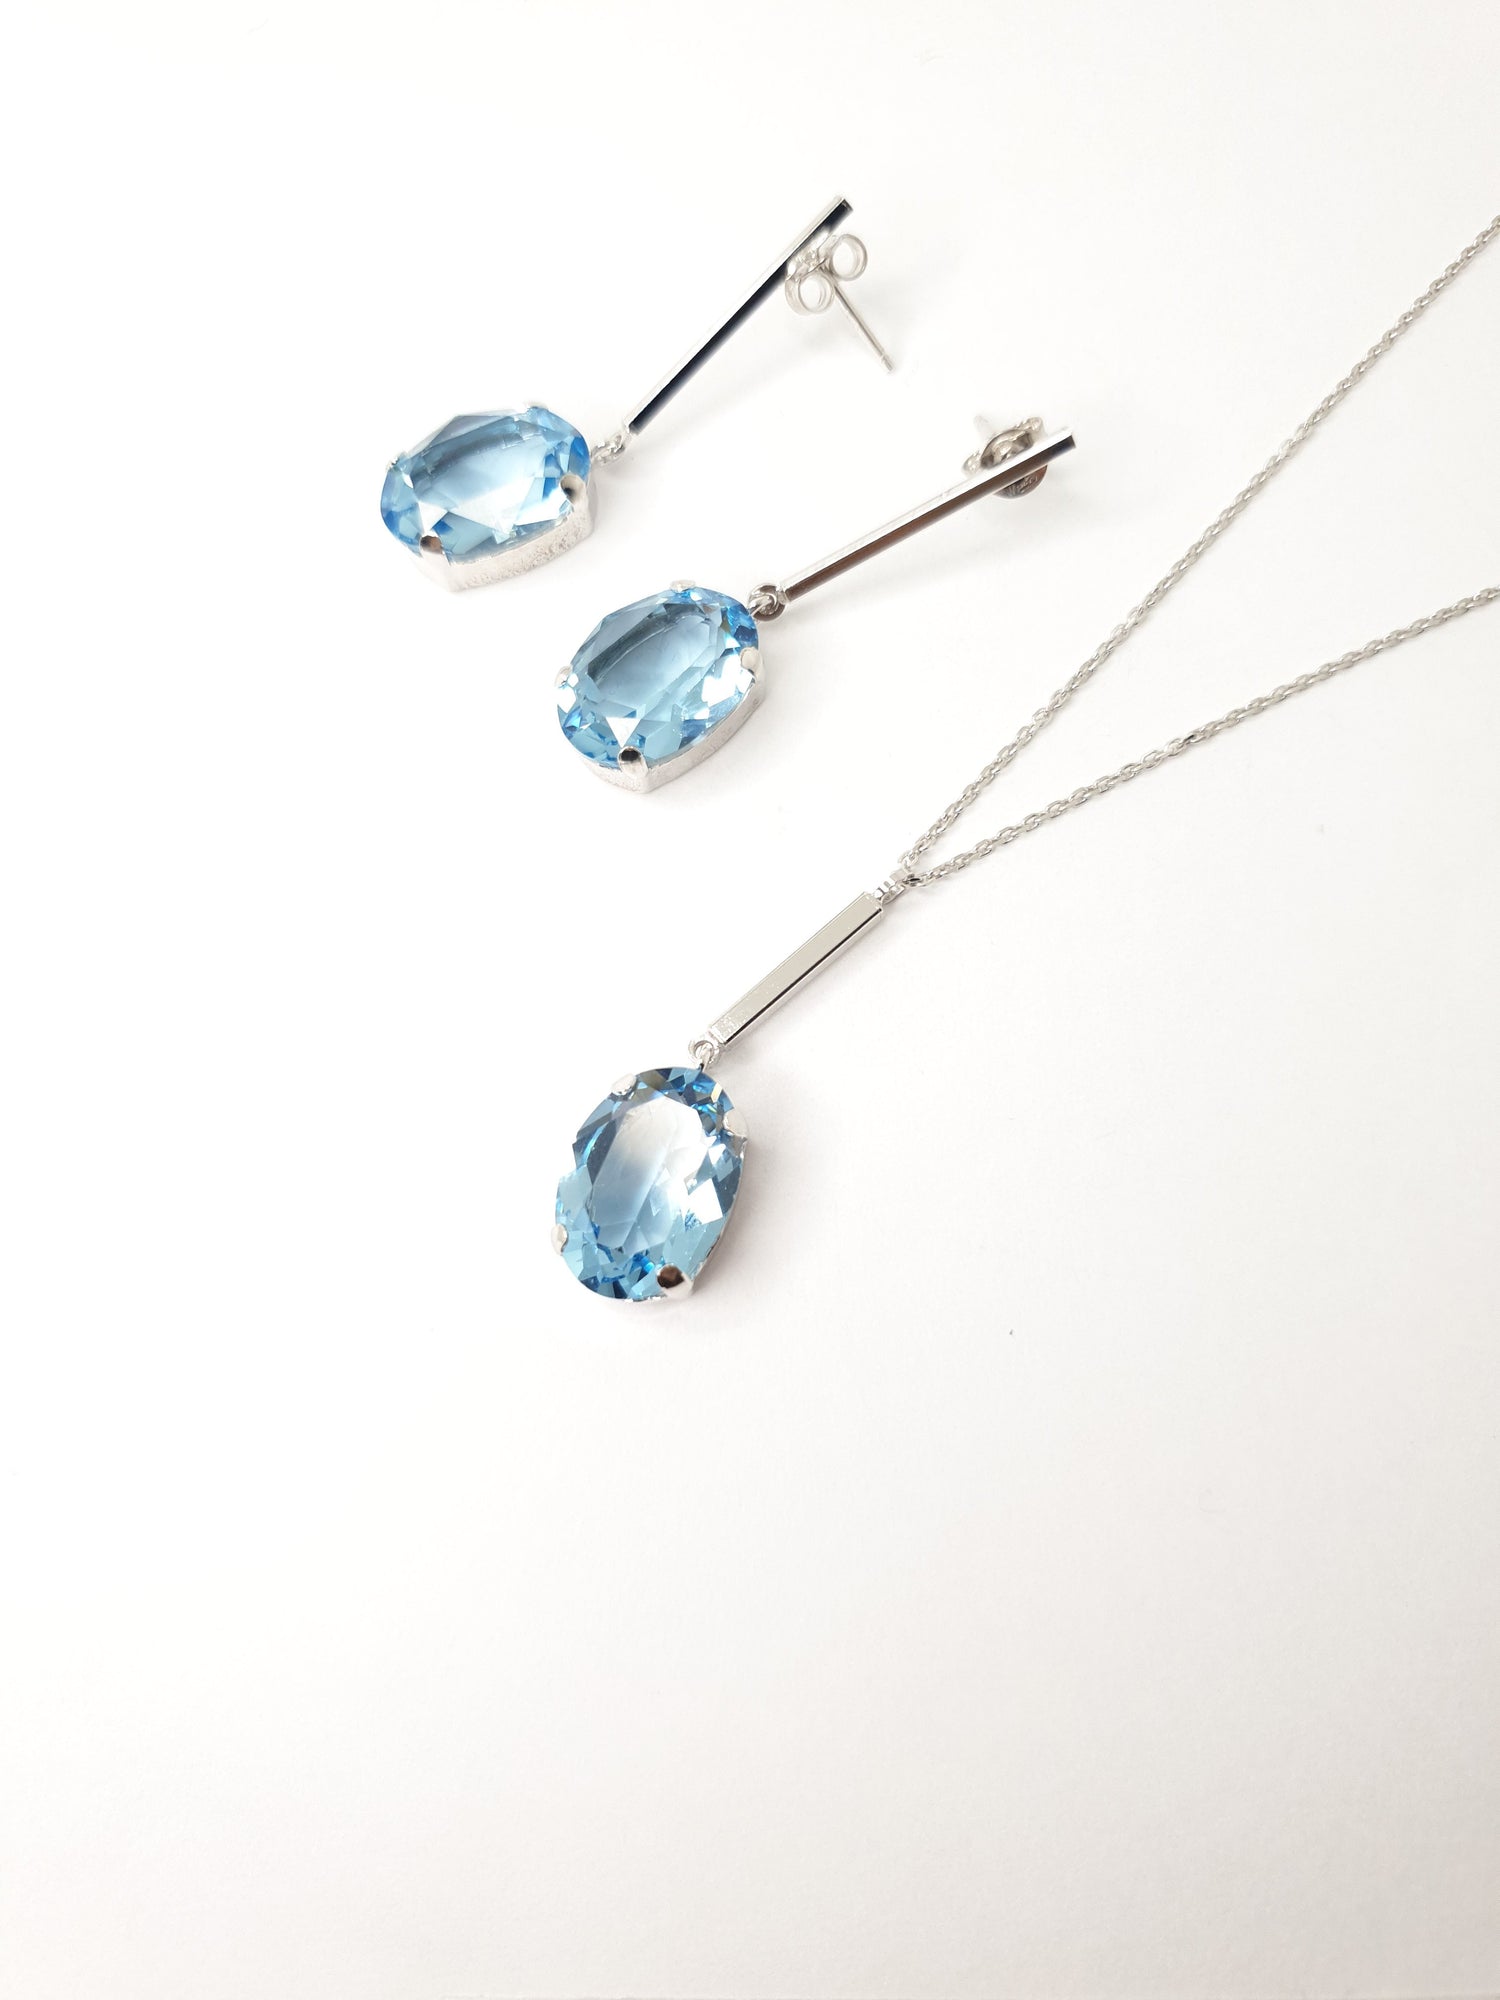 Luxuriöse Halskette aus 925 Silber mit prächtigem Swarovski Stein im Ovalschliff in stechendem Blau - das perfekte Schmuckstück für jede modebewusste Frau